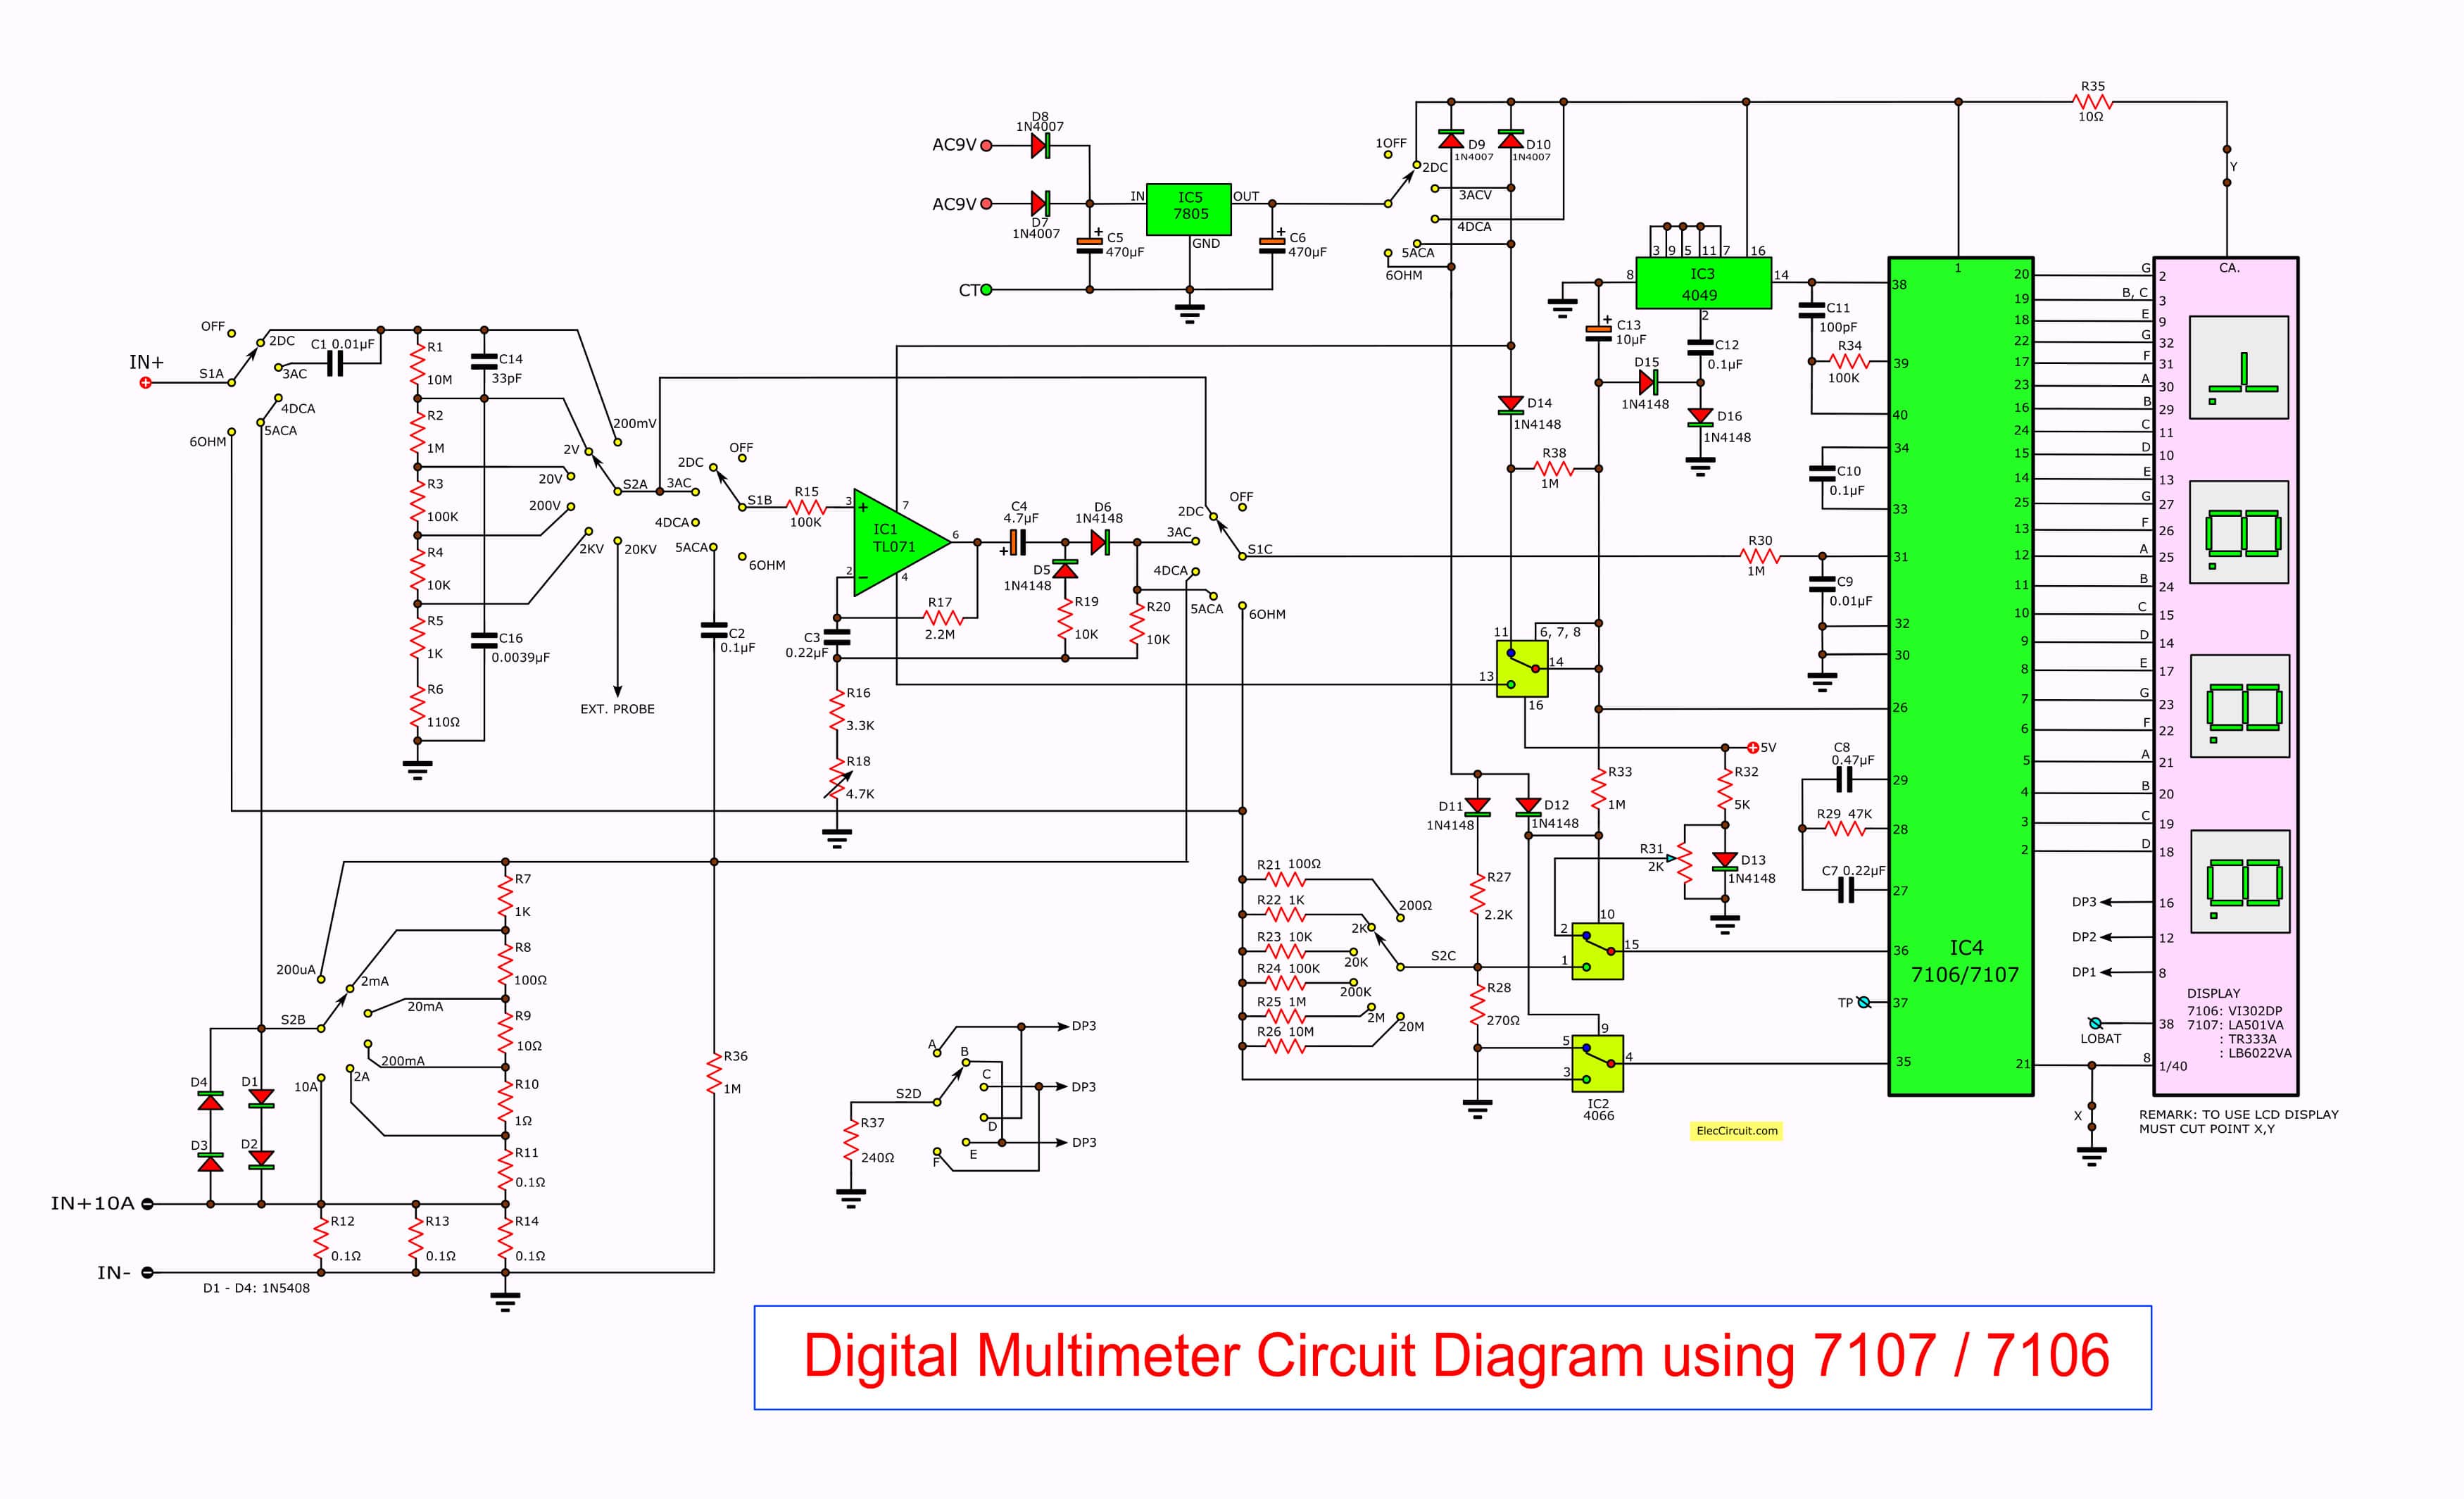 Digital multimeter circuit using ICL7107